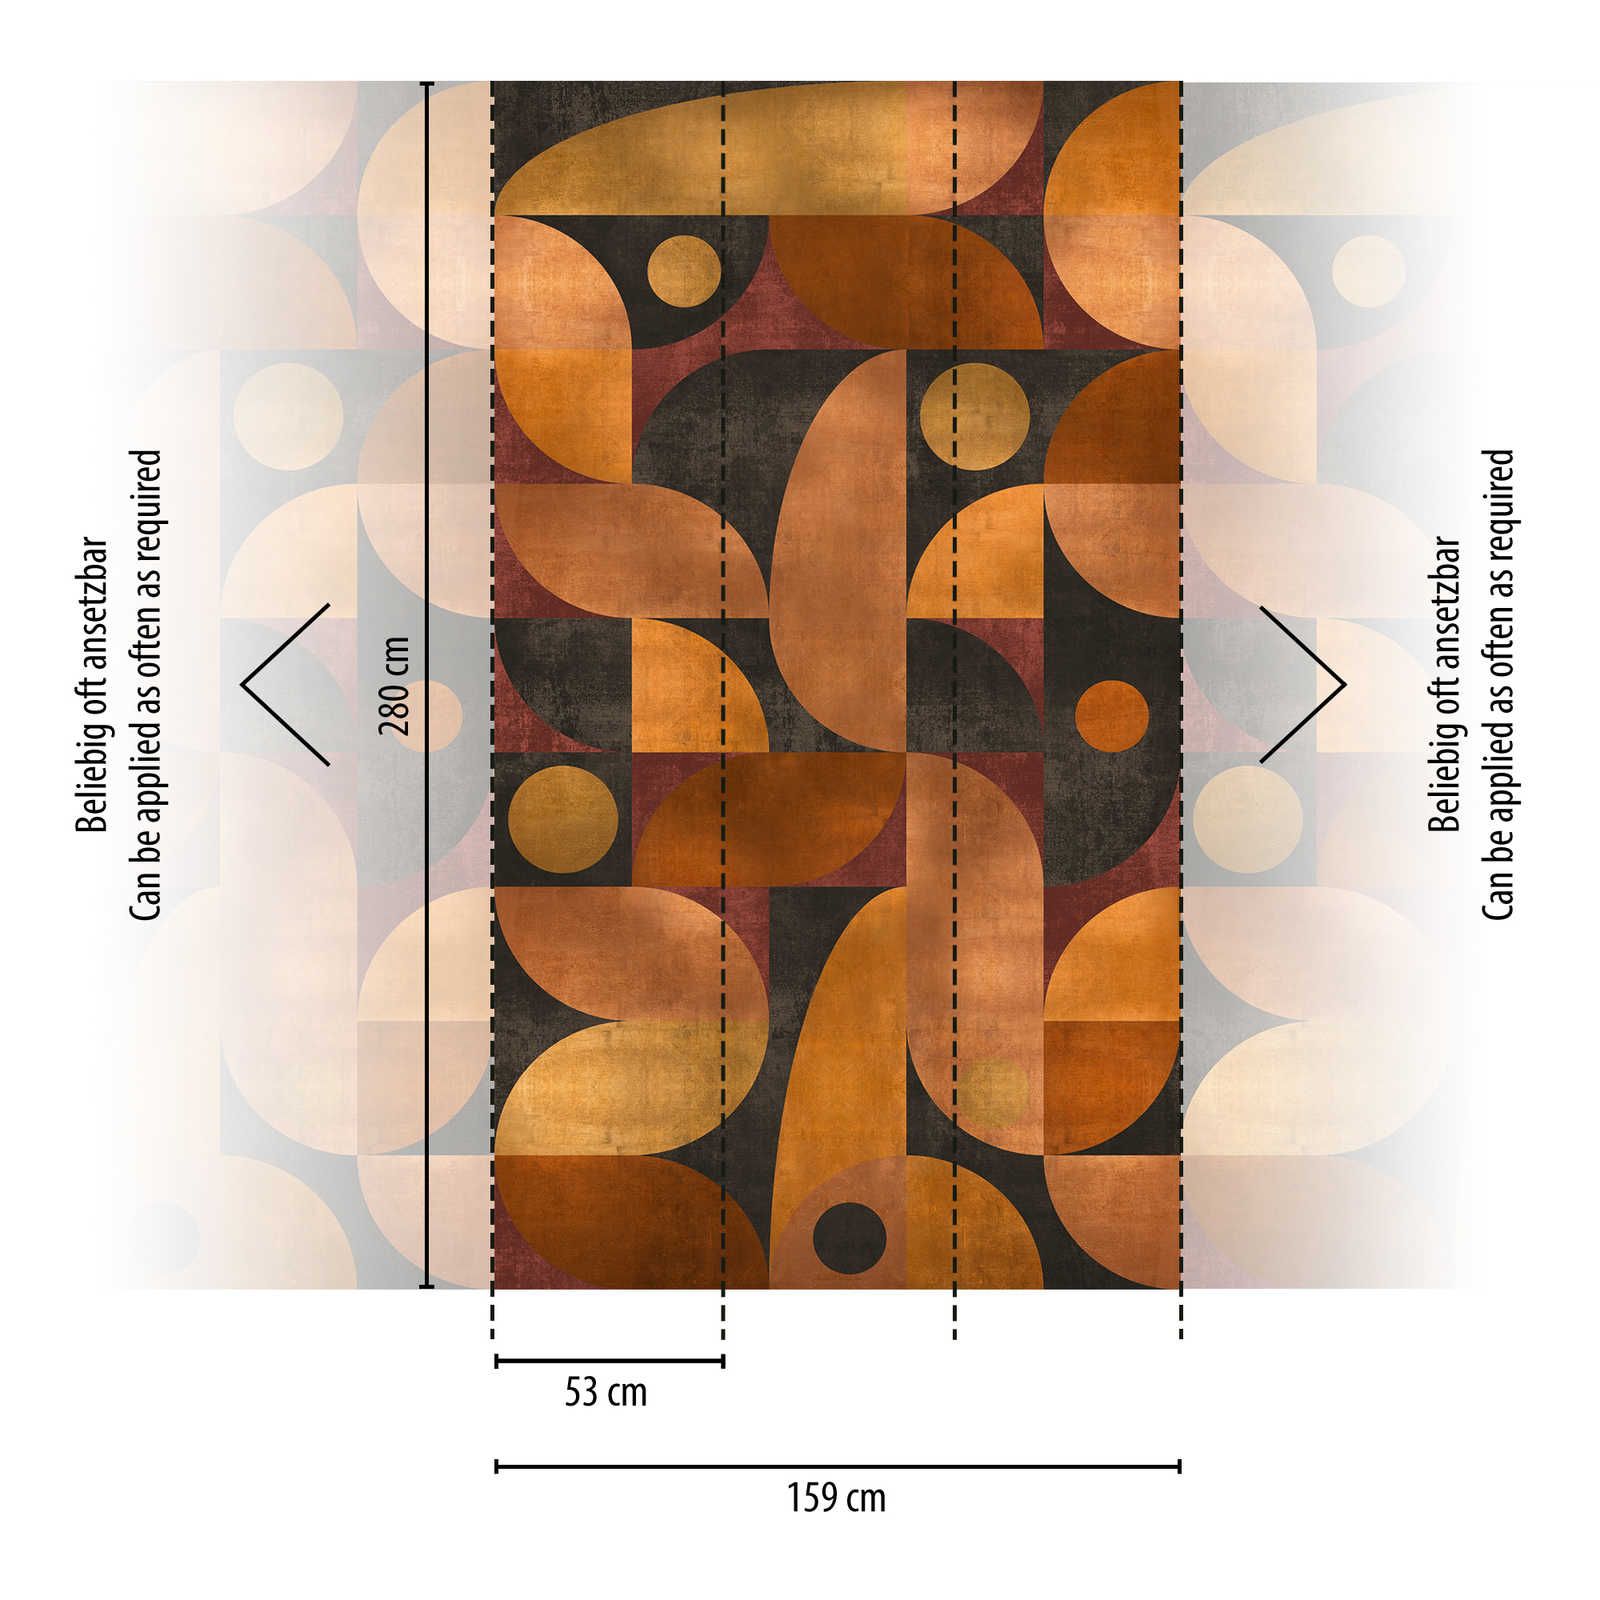             Vliestapete in warmen Farbtönen mit grafischen runden Muster – Orange, Braun, Rot
        